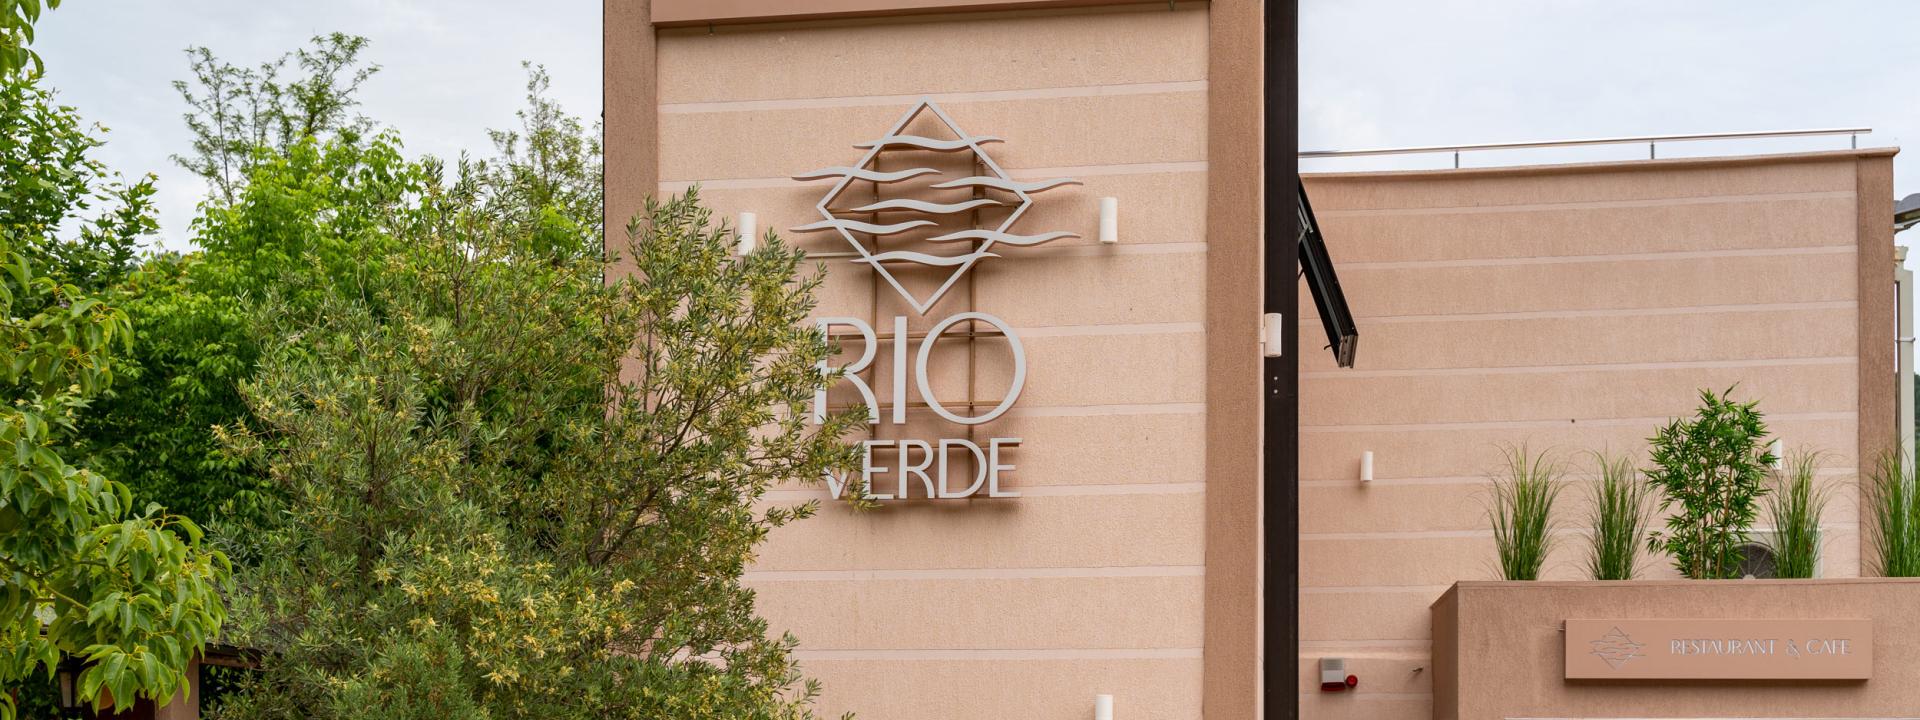 Naša priča - Rio Verde